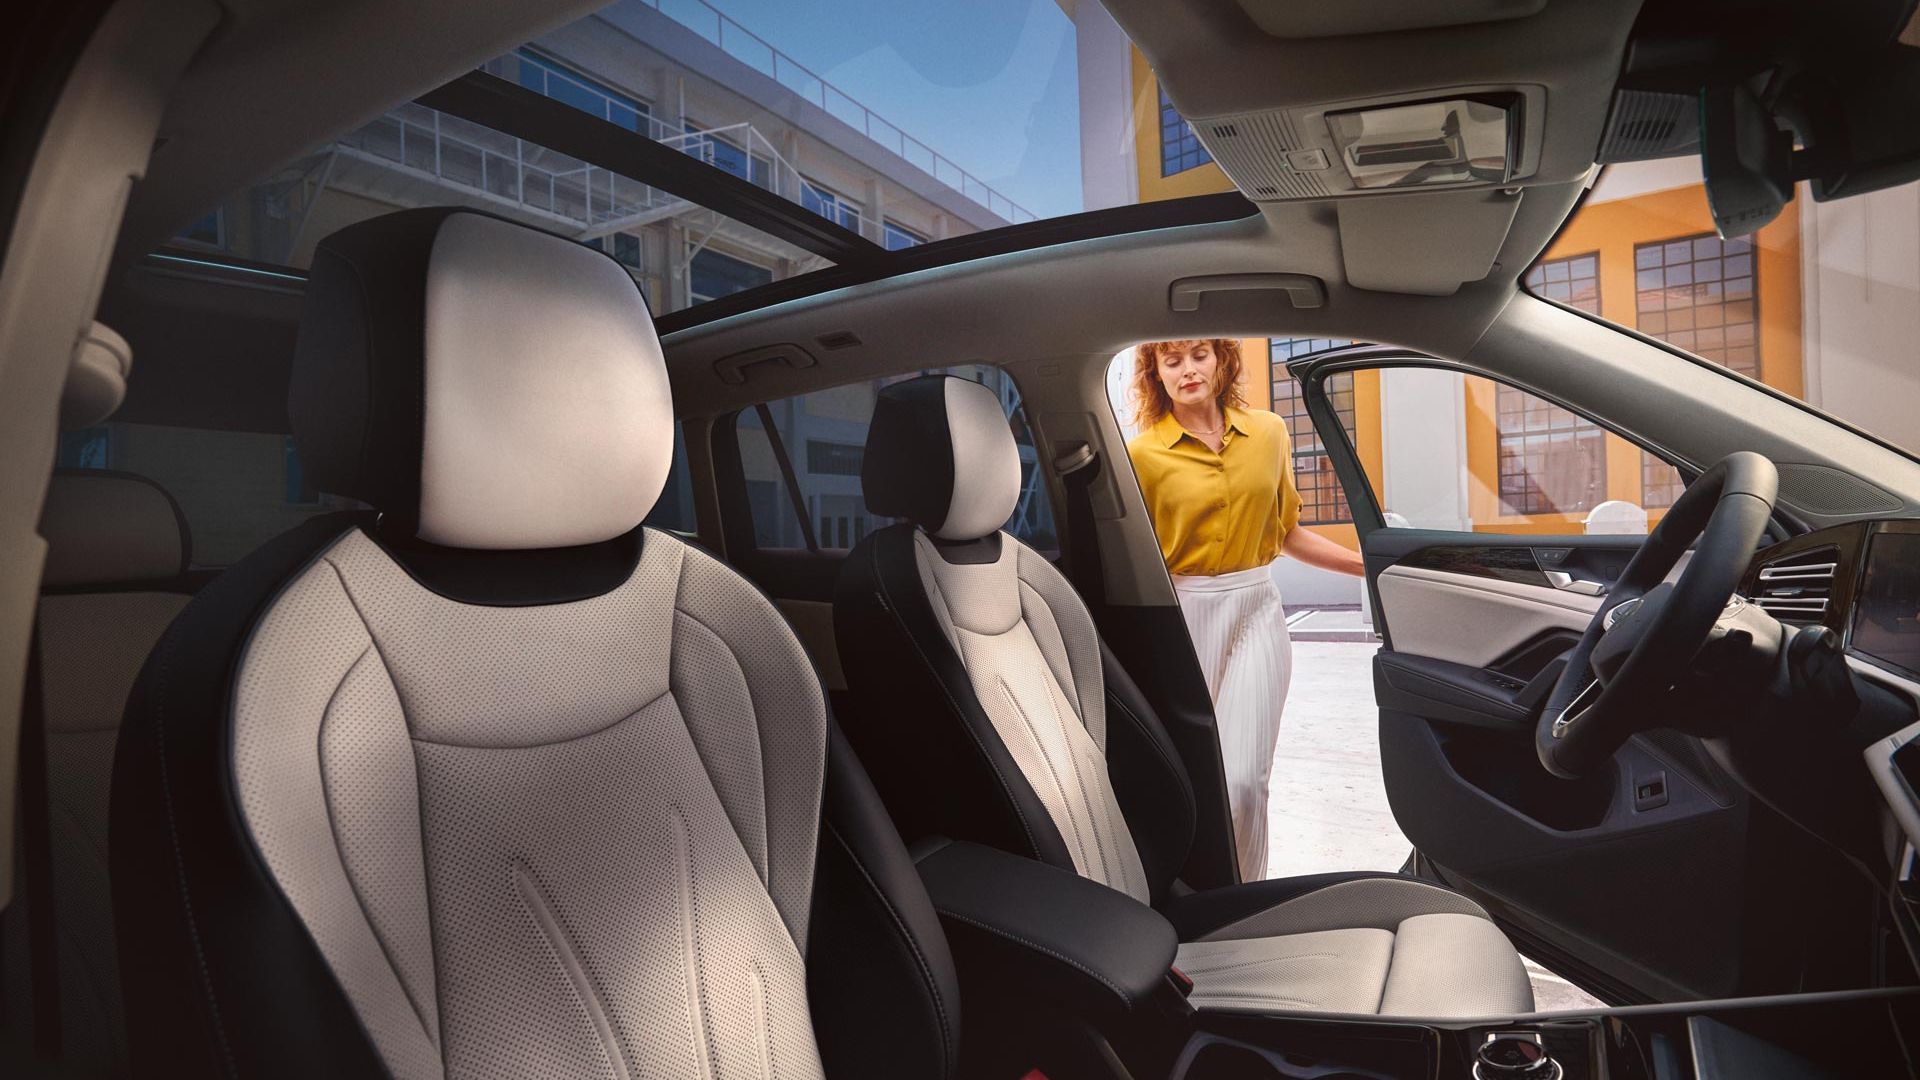 Innenansicht eines VW Tiguan mit Panoramadach und weißen Sitzen, Frau öffnet Fahrertür